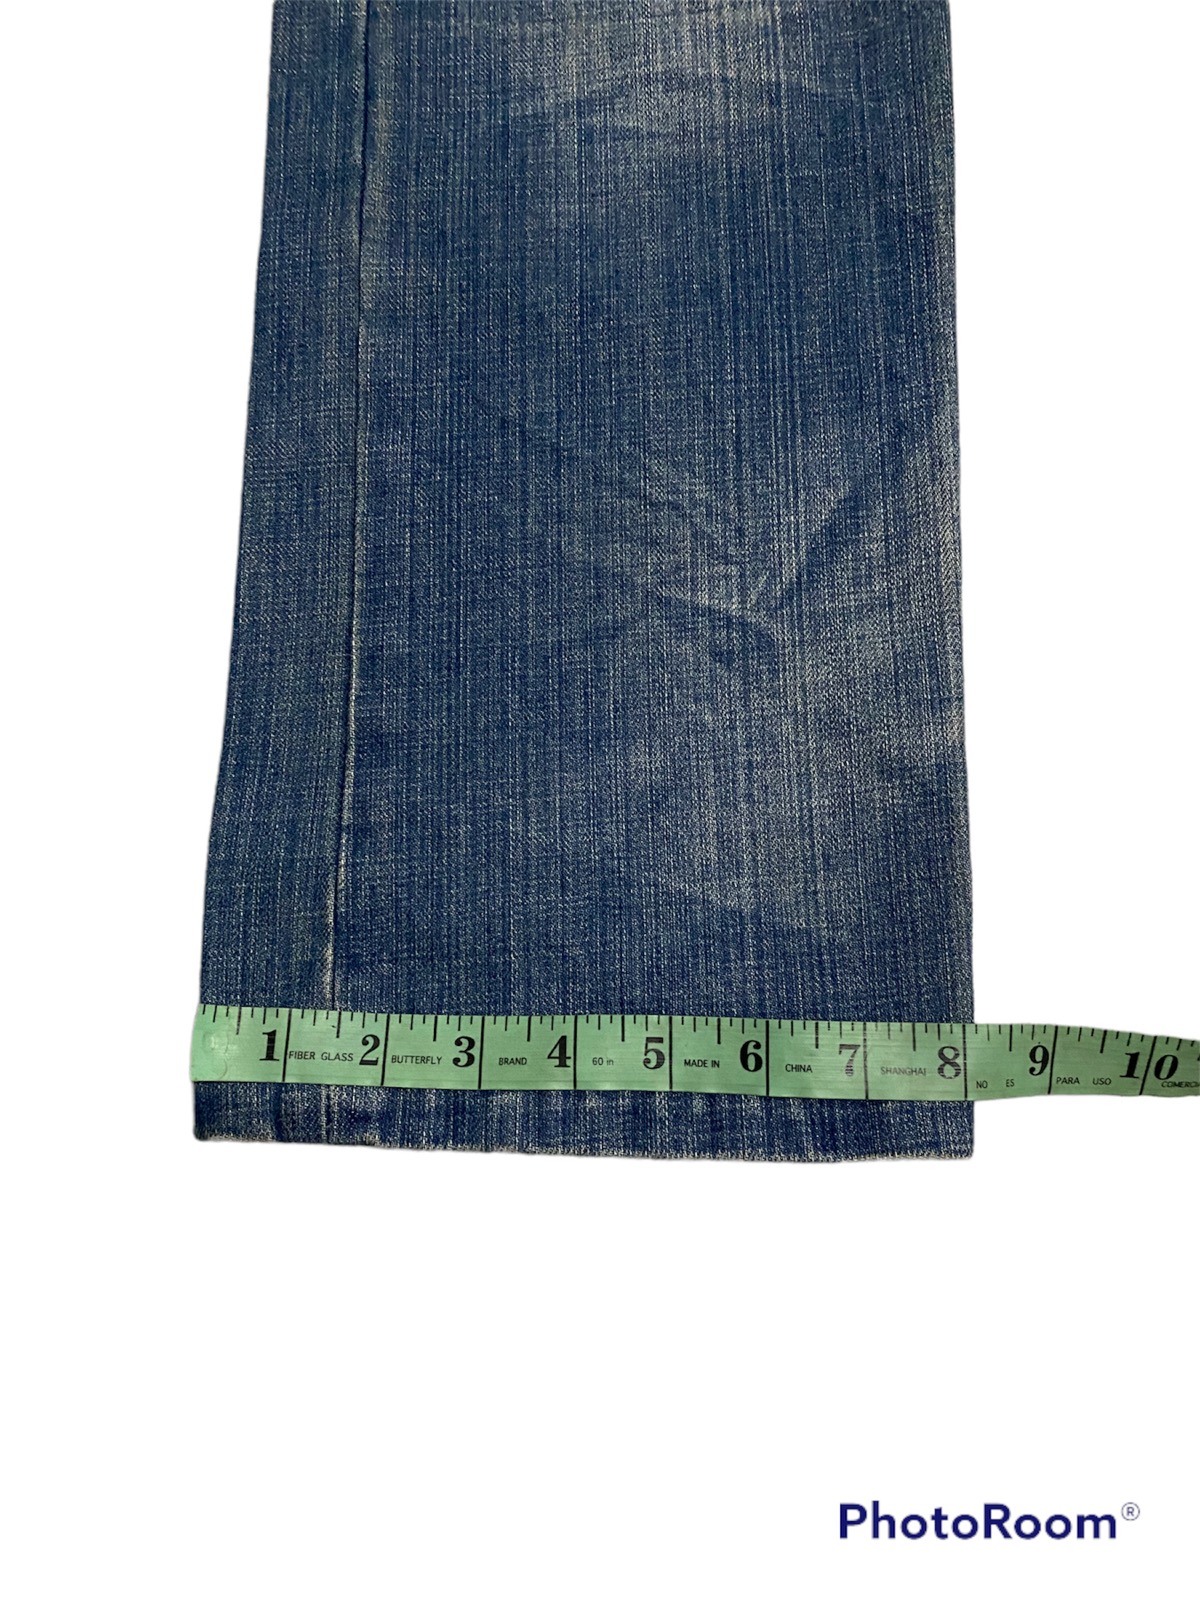 PROjectaStore Gotcha Jeans Distressed Size L Gotcha Surf Patches Denim Jeans Pants Size 32/33x31.5